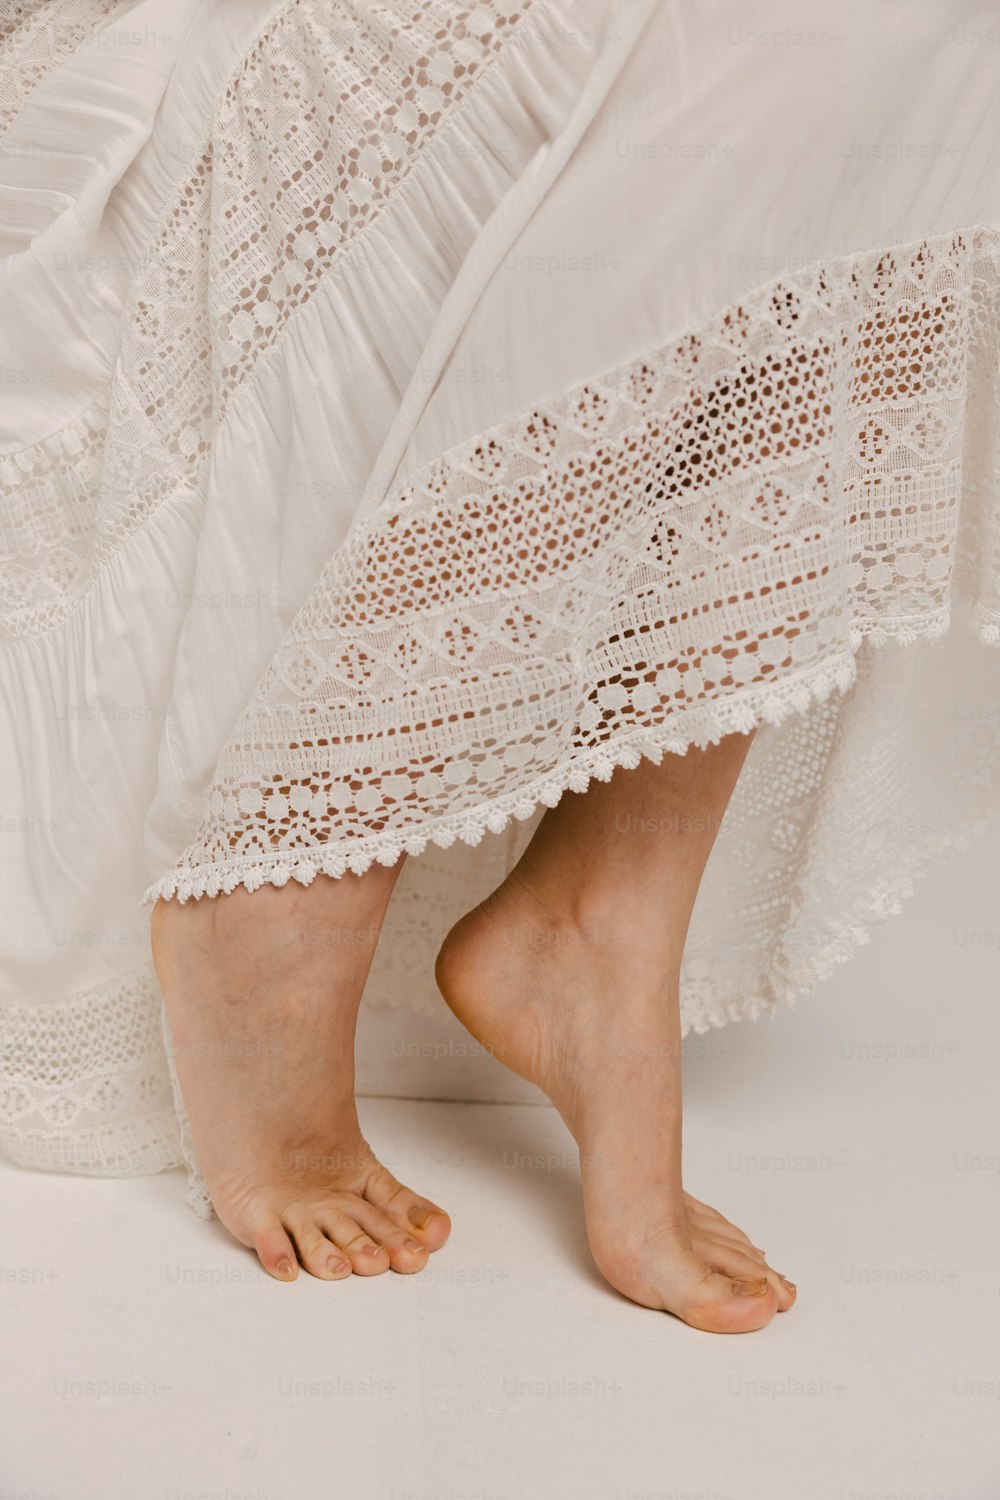 Die nackten Füße einer Frau in einem weißen Kleid